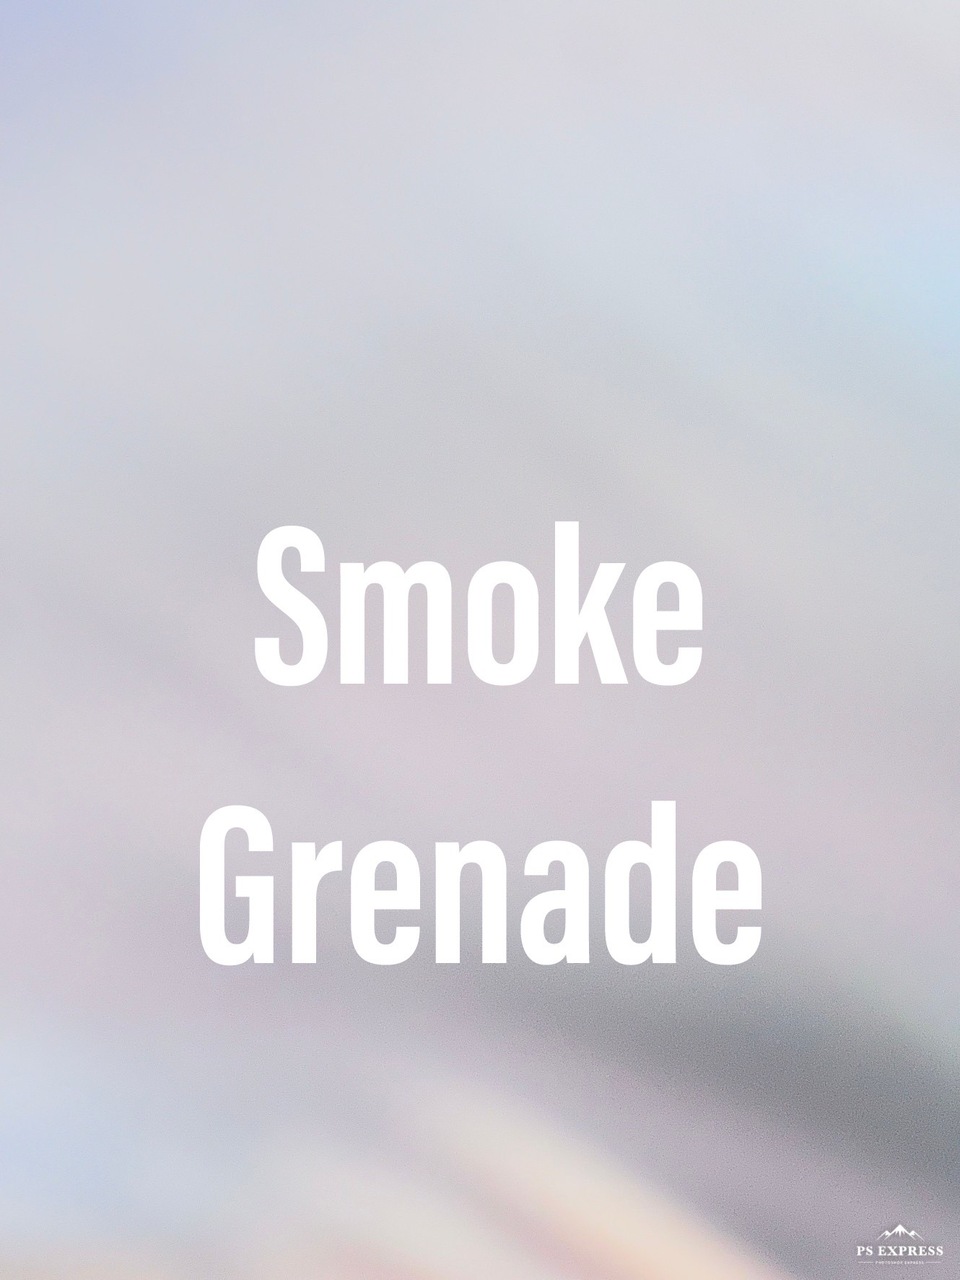 Jay Tseng - The Smoke Grenade